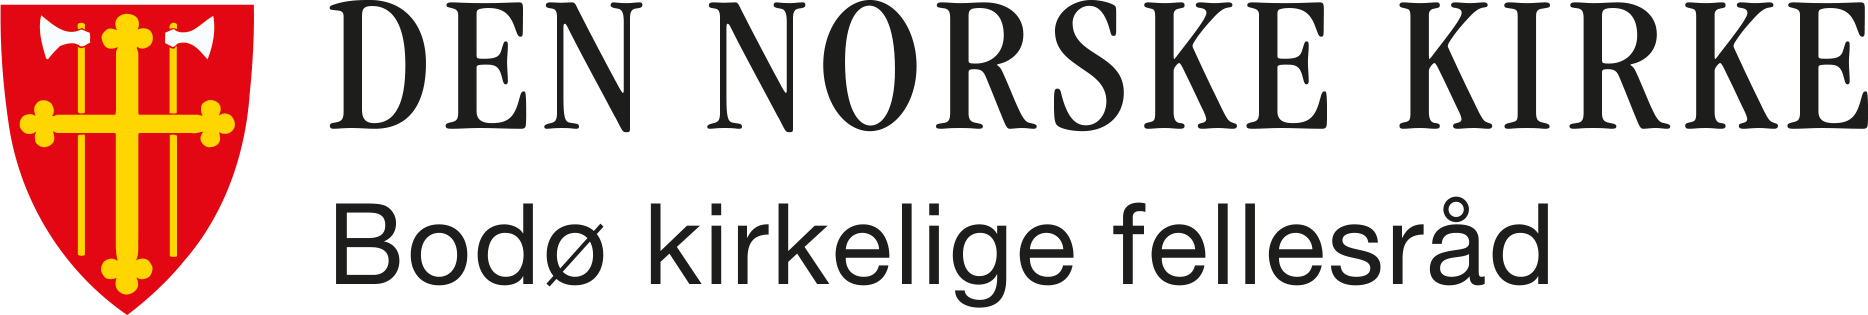 Bodø kirkelige fellesråd logo